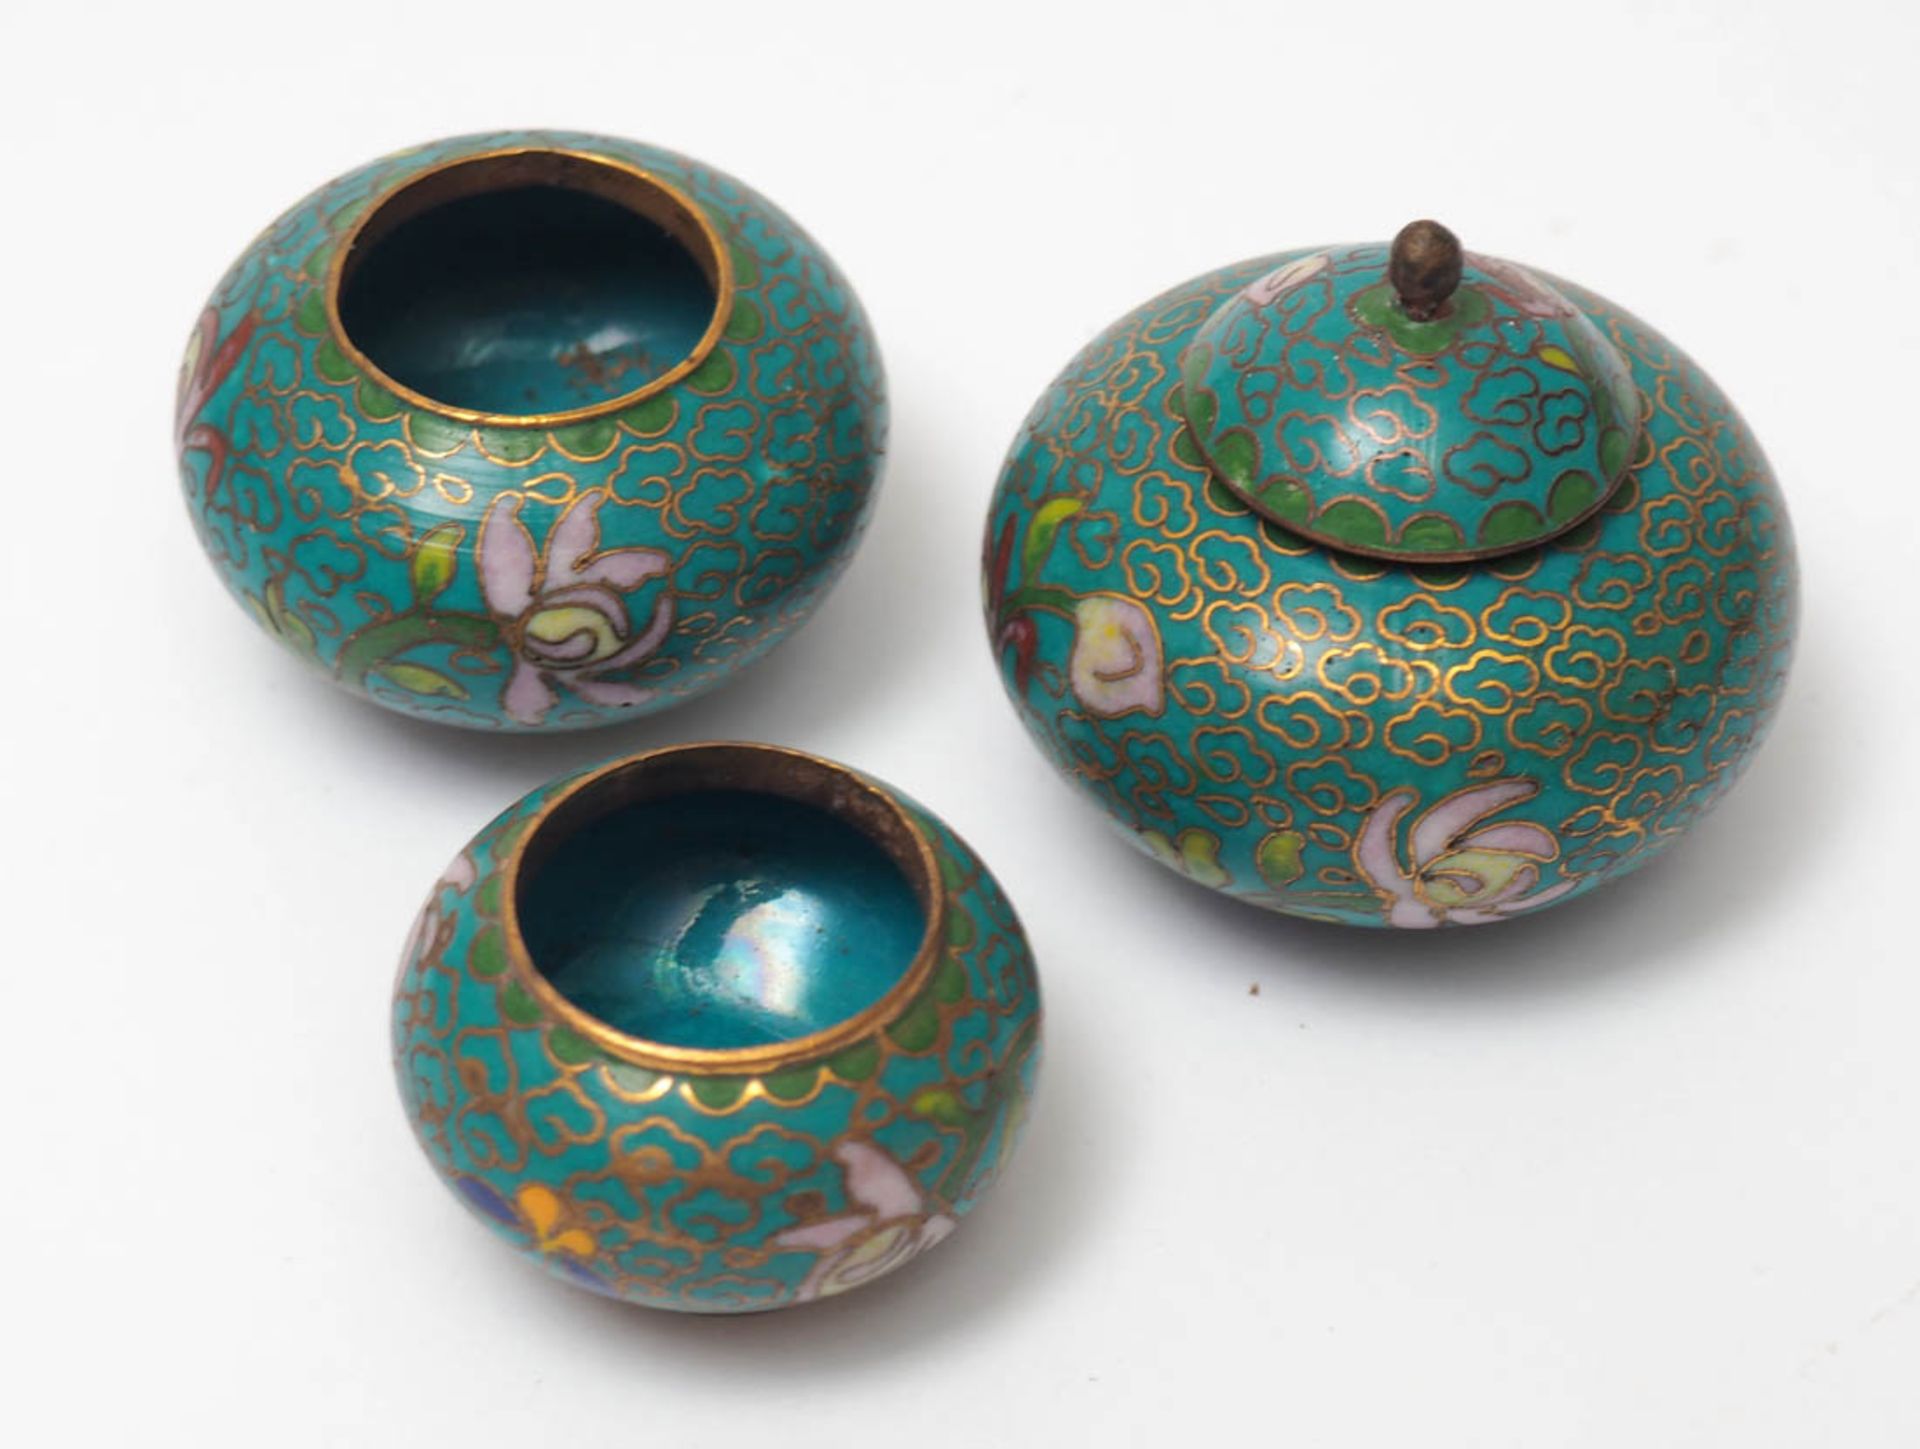 Drei Cloisonné-Gefäße, China Türkisfarben, mit polychromen Blüten. Durchm.3,5-4,5cm. - Bild 2 aus 2